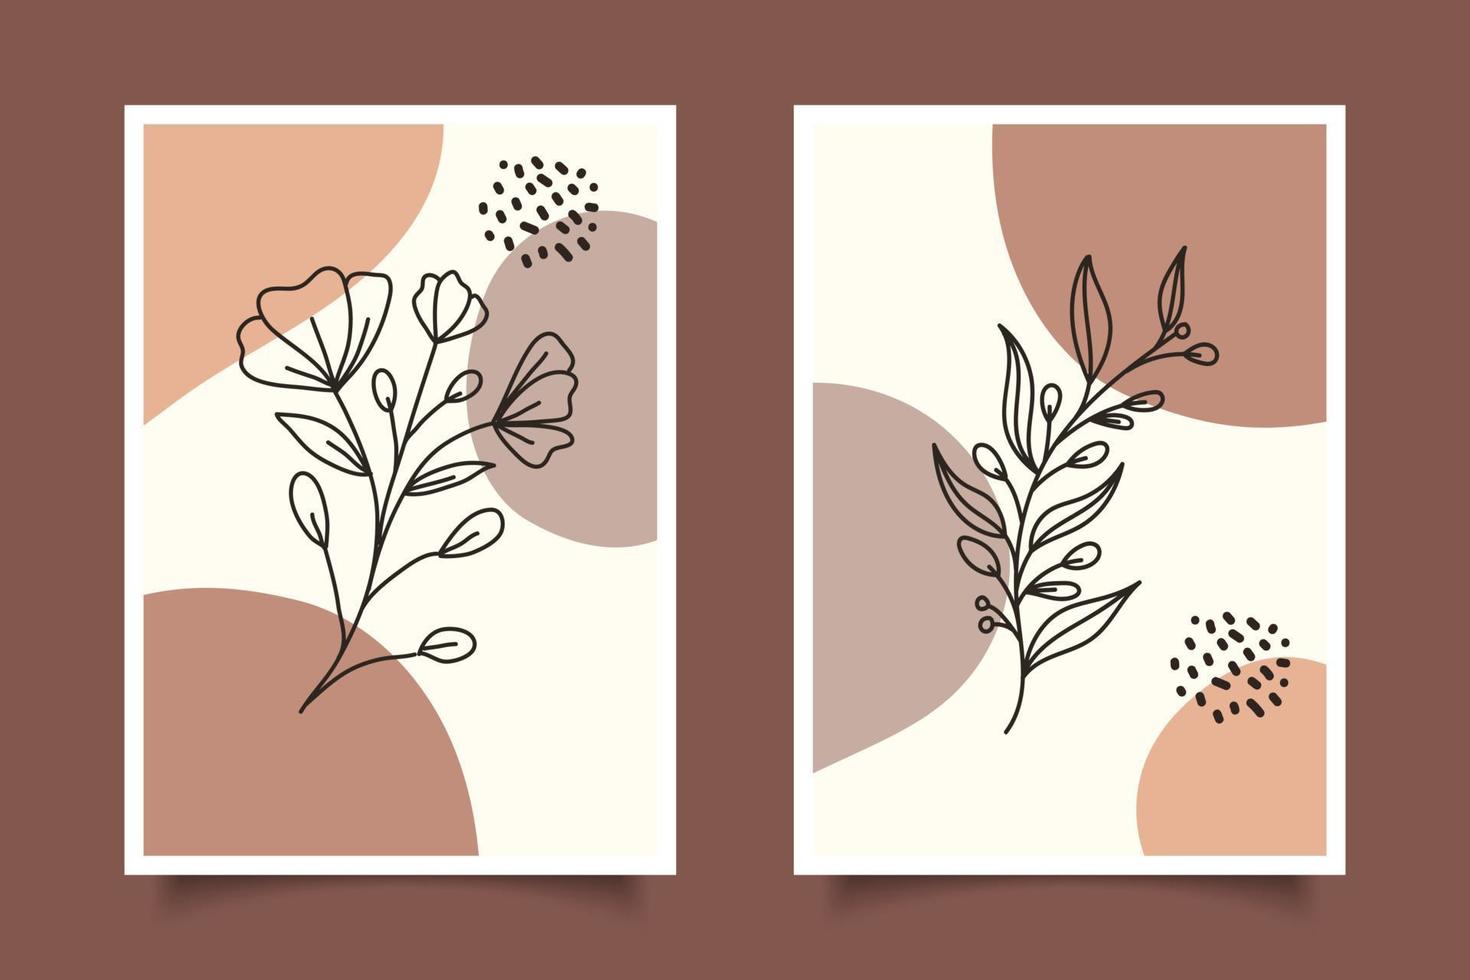 dessin au trait botanique abstrait moderne avec des formes organiques boho pour la décoration murale vecteur